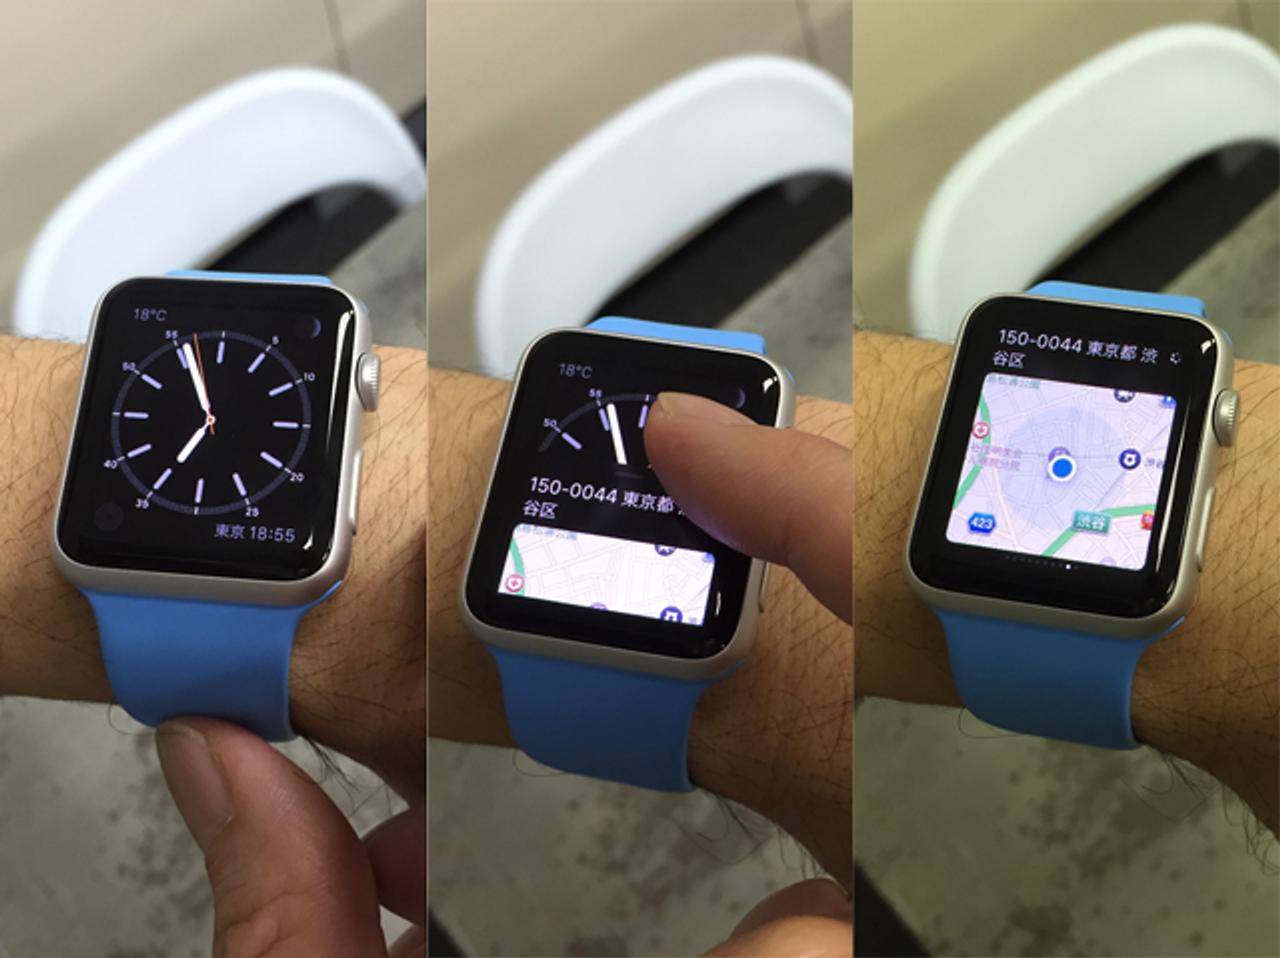 Apple Watchで便利な情報に素早くアクセスできるグランス #AppleWatch